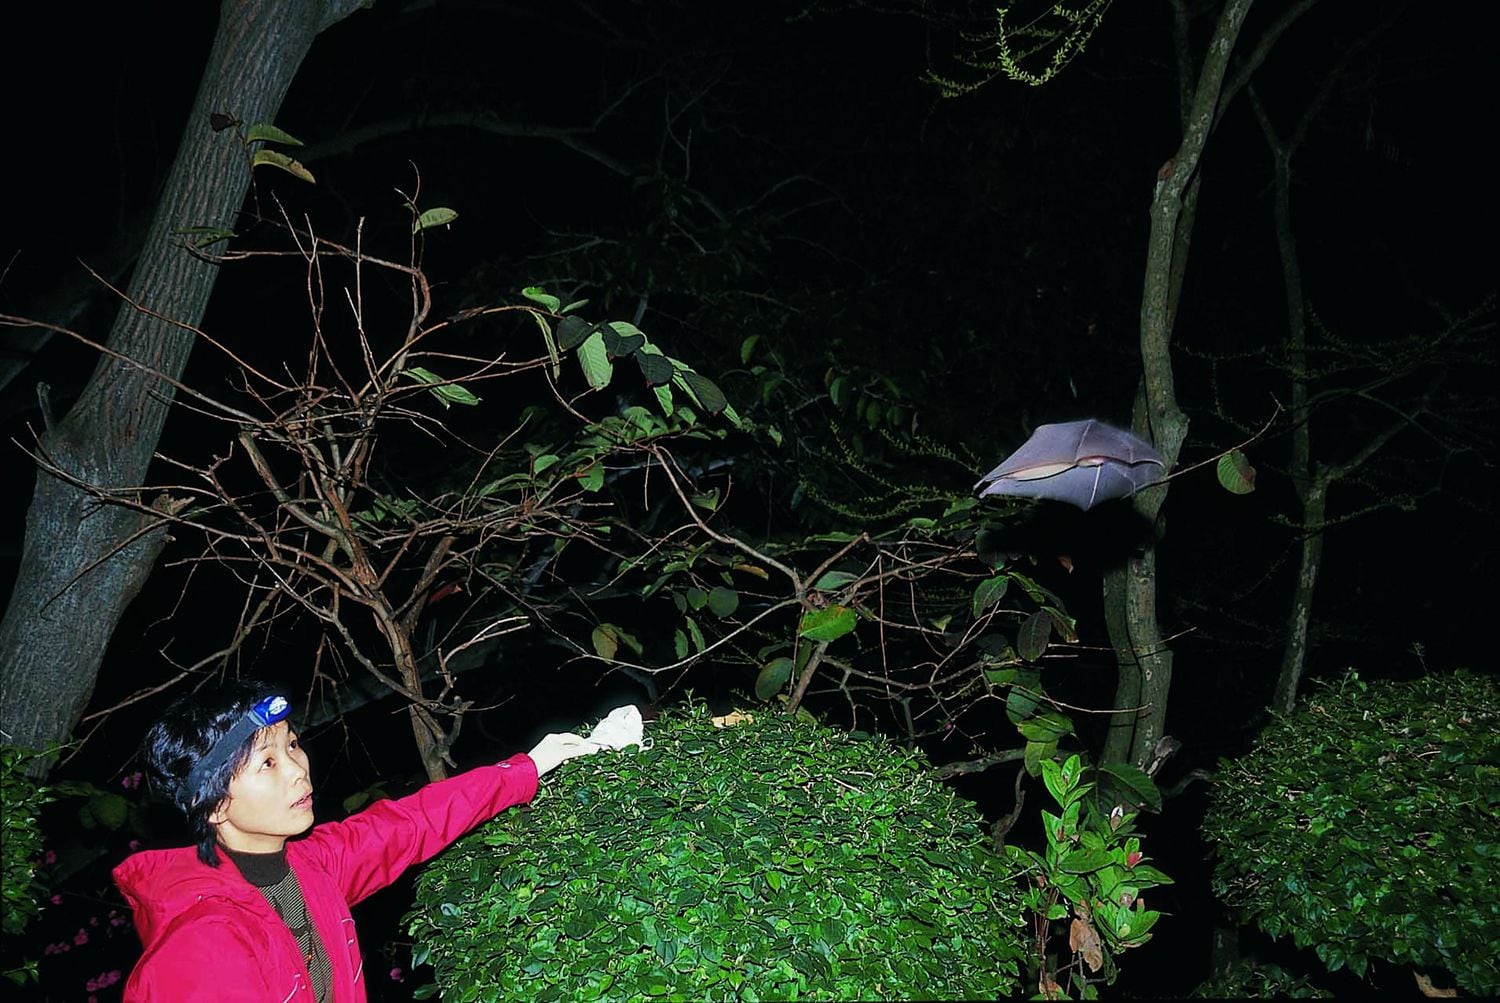 La viróloga Shi Zhengli libera un murciélago de una cueva china tras sacarle sangre, en 2004.